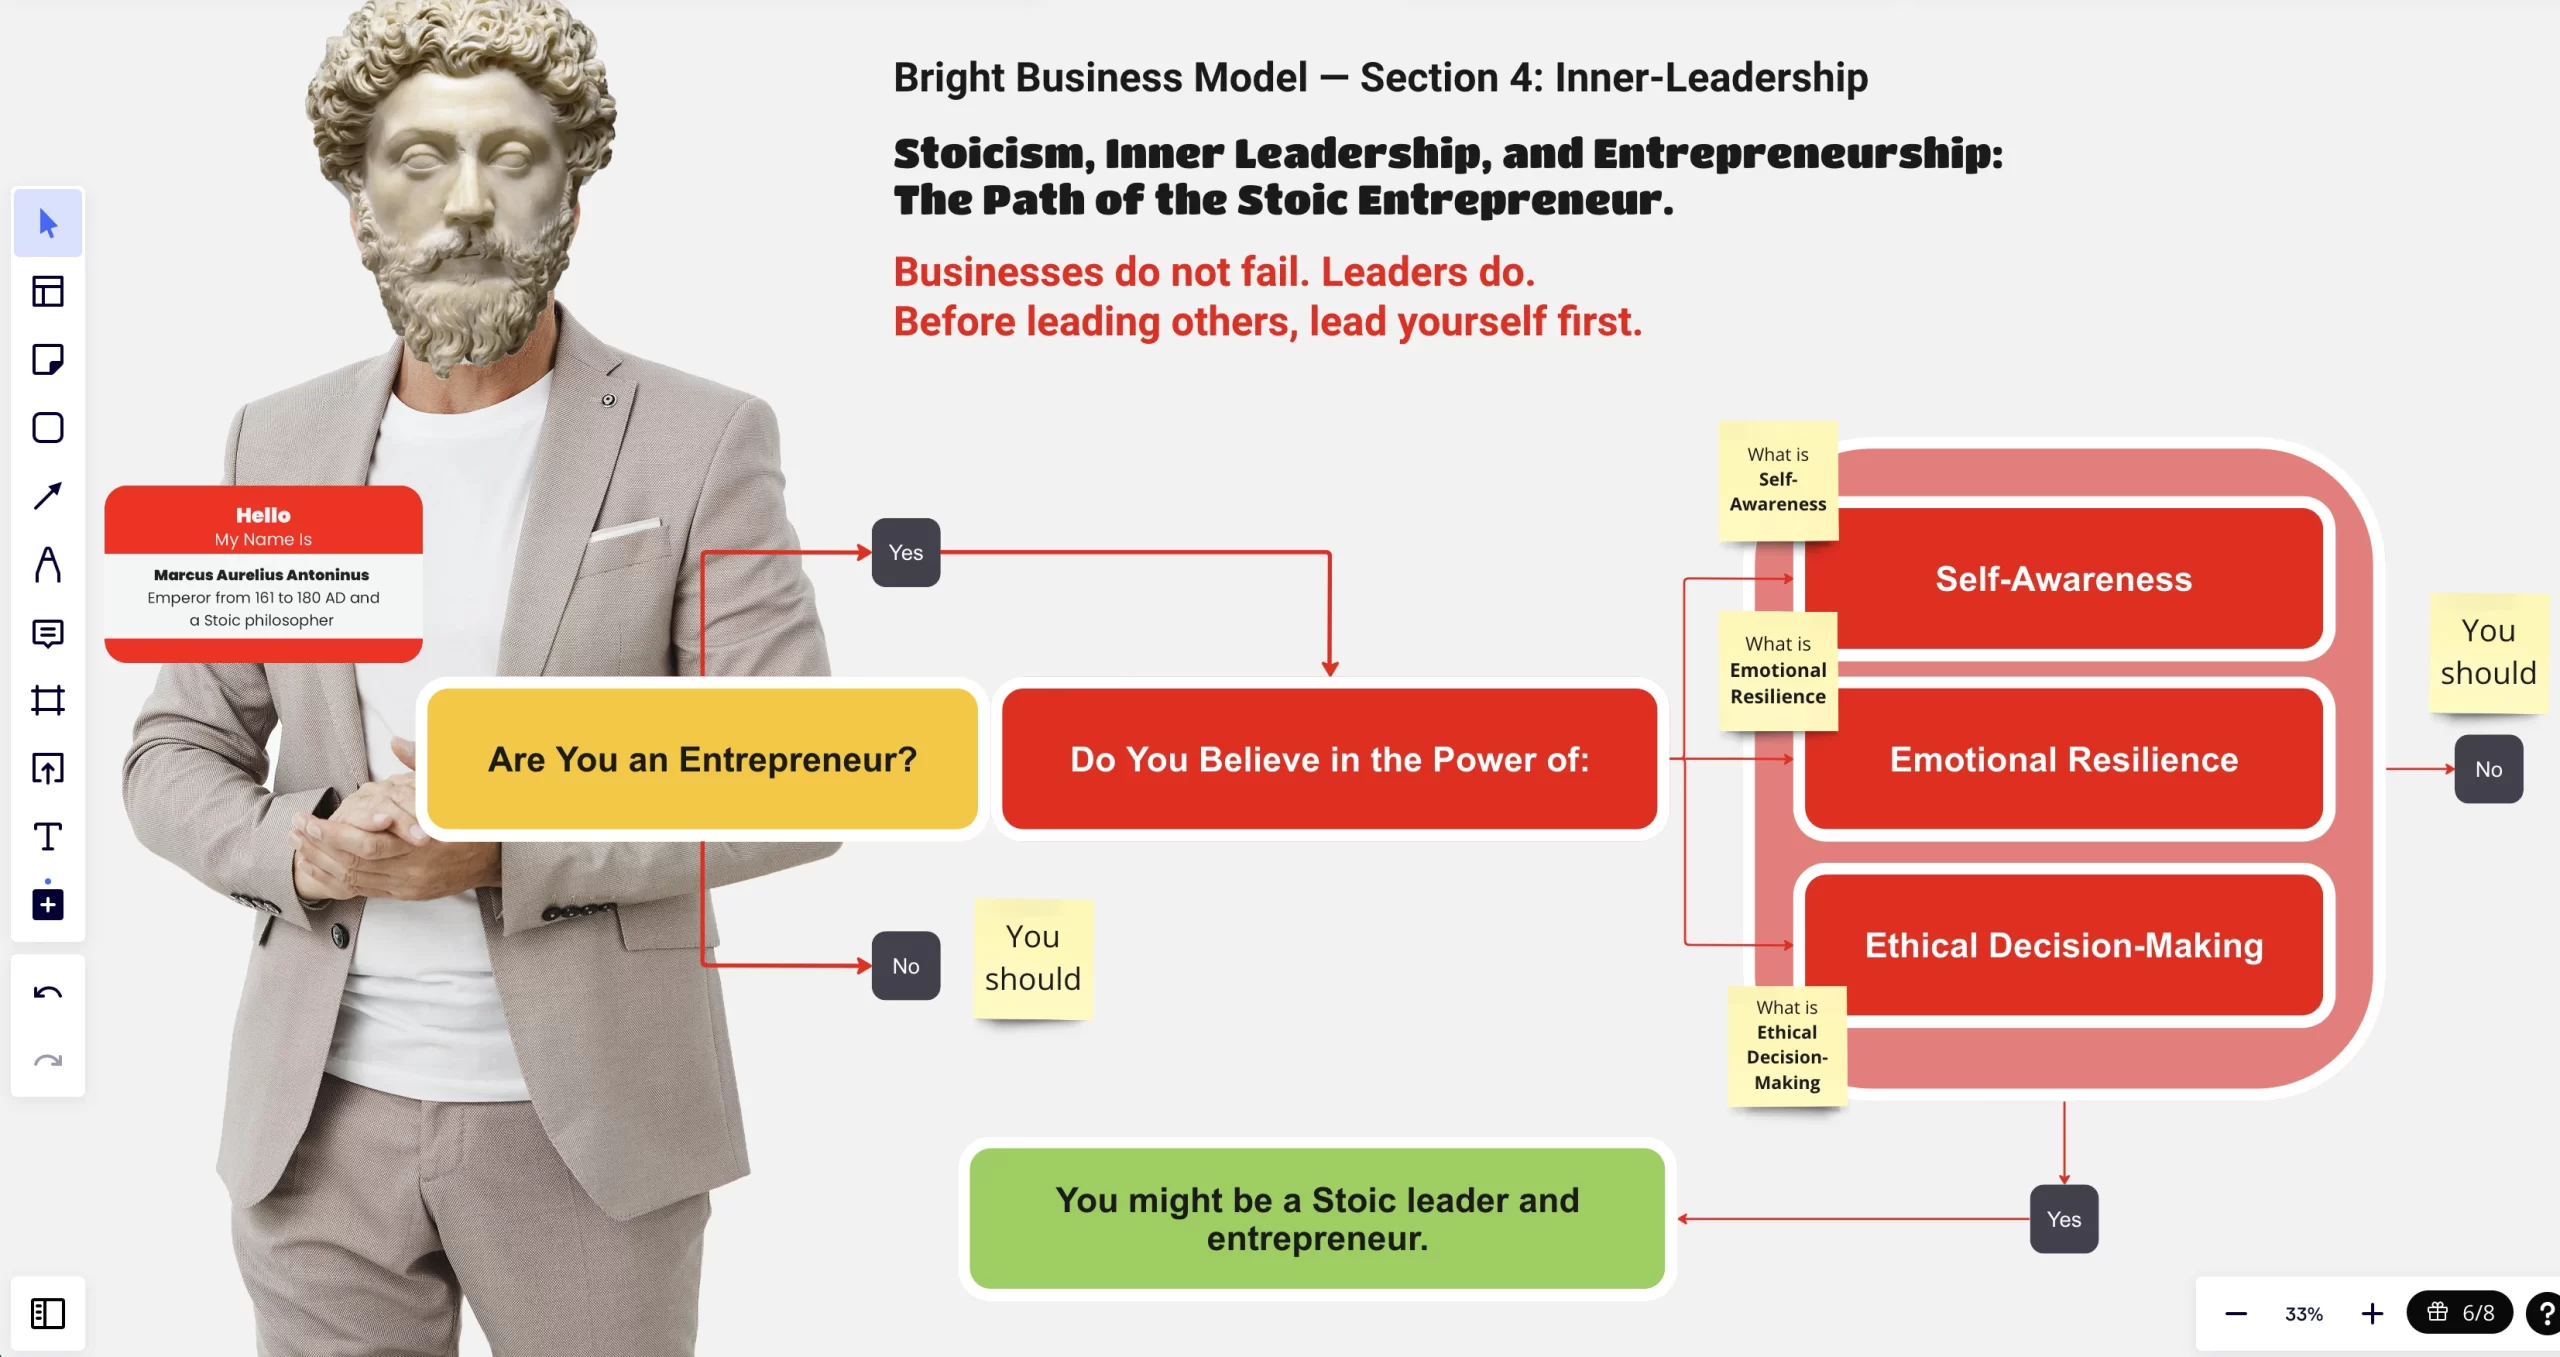 Bright Business Model — Stoic Entrepreneurs